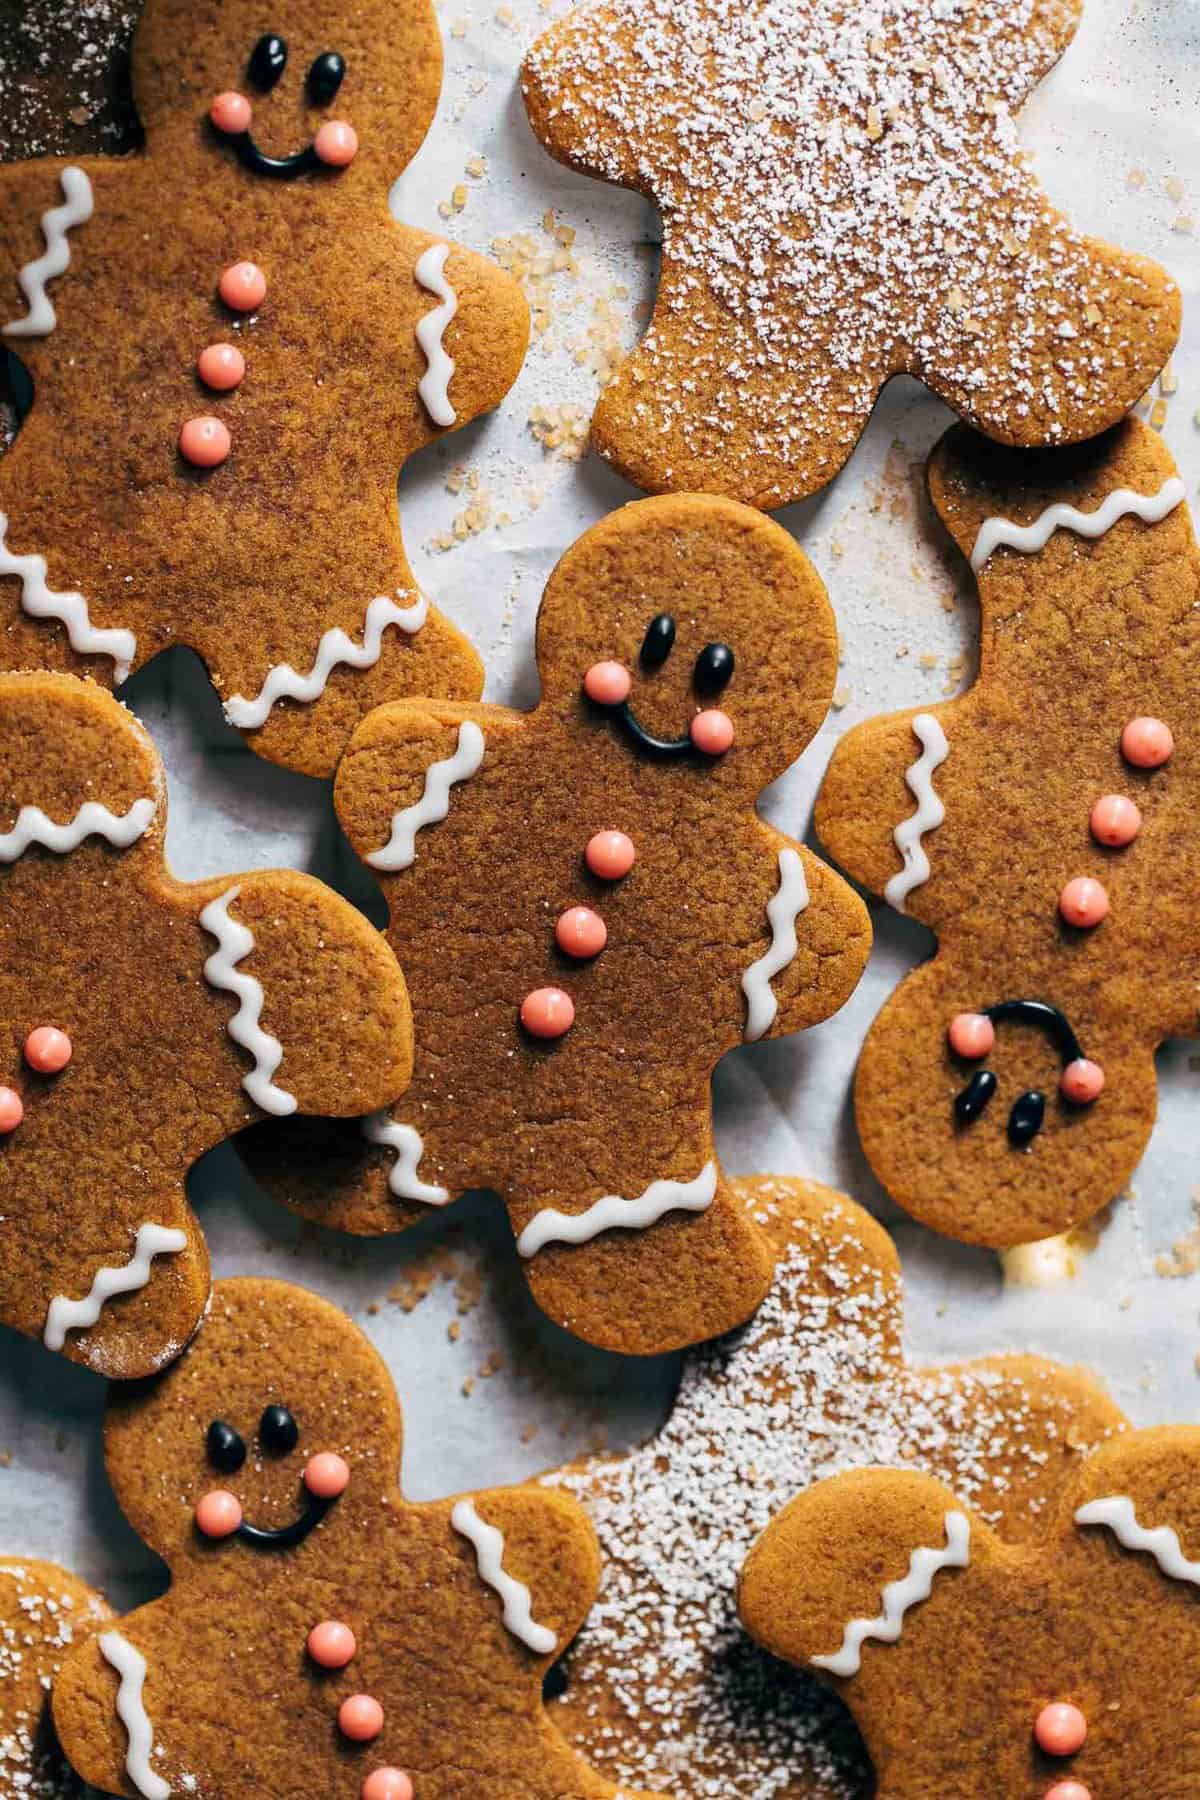 https://butternutbakeryblog.com/wp-content/uploads/2021/12/gingerbread-man-cookies.jpg